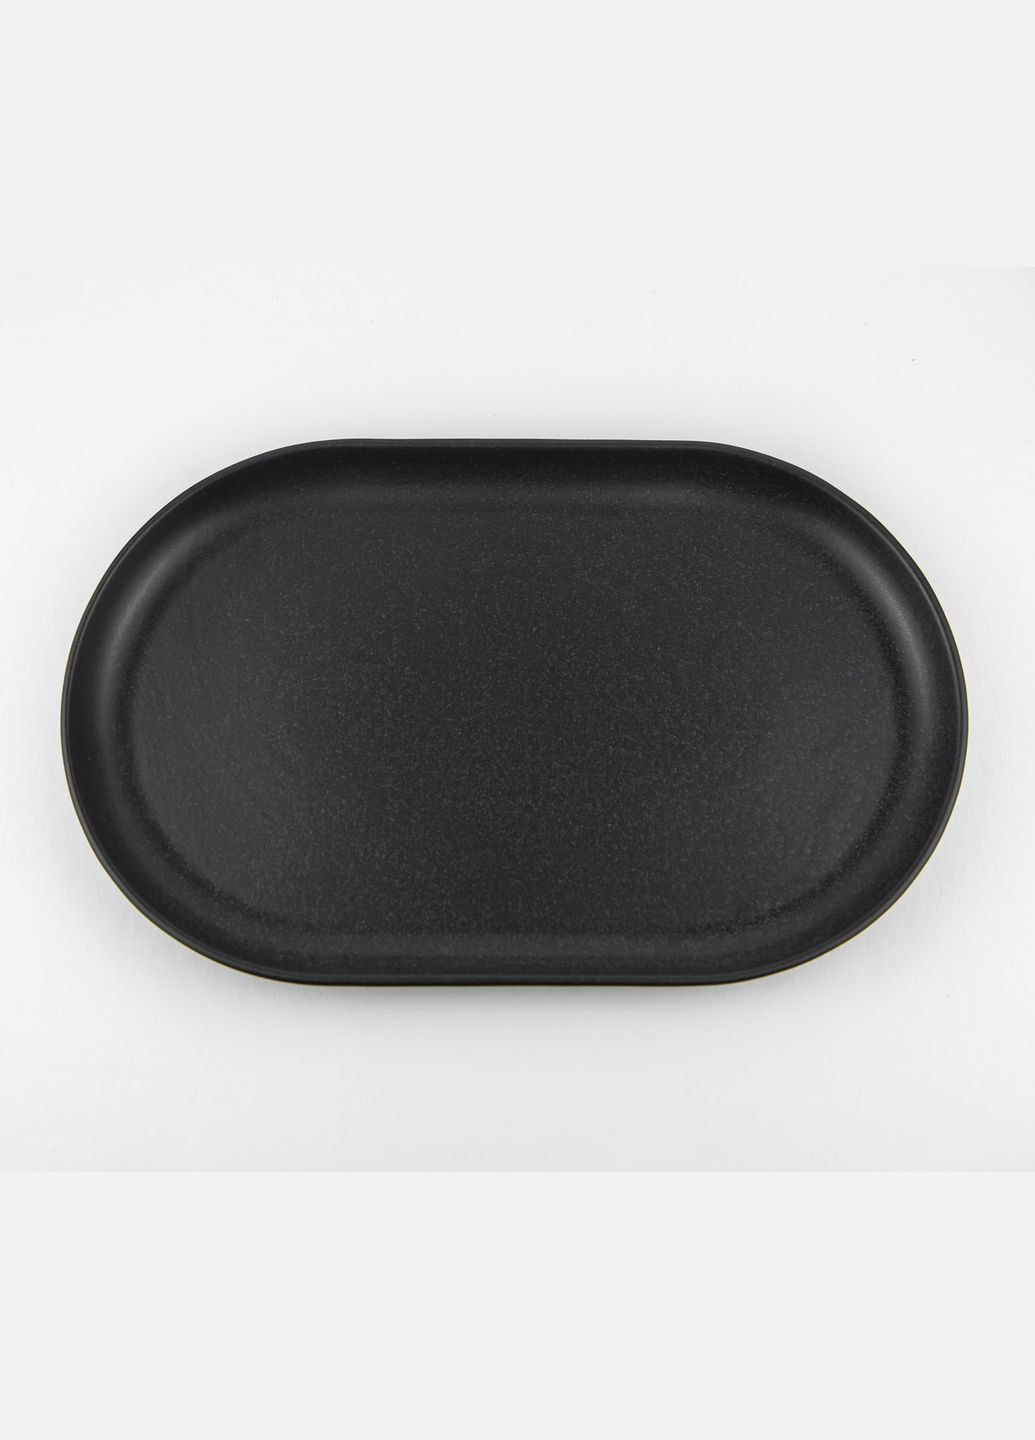 Тарелка овальной формы Seasons Black 118132 32см Черная овальная тарелка Фарфоровая овальная тарелка Porland (277949170)